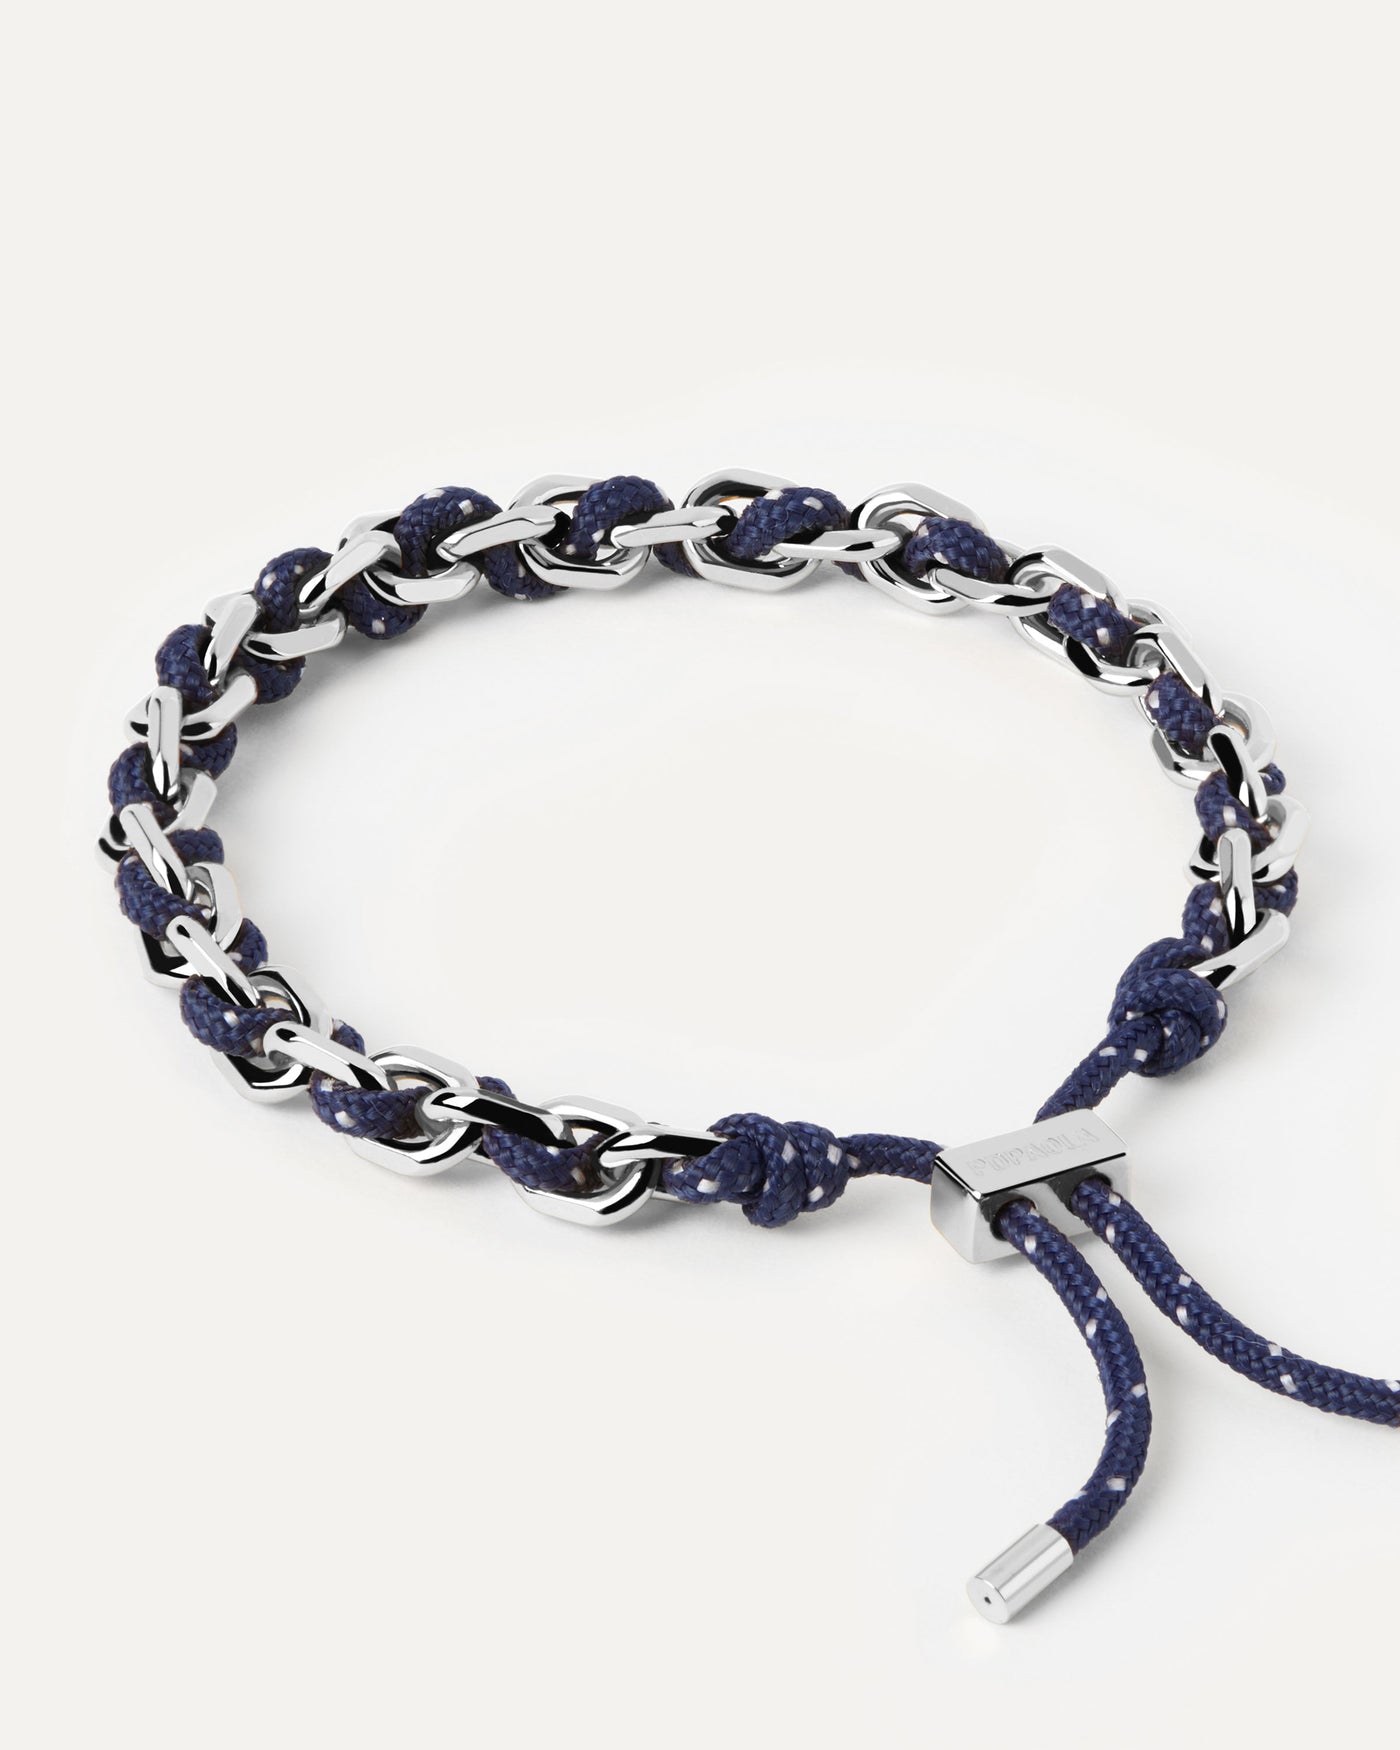 Sélection 2023 | Bracelet Cordon et Chaîne Argentée Midnight. Bracelet chaîne argentée avec corde bleu marine entrelacée et fermoir coulissant ajustable. Découvrez les dernières nouveautés de chez PDPAOLA. Commandez et recevez votre bijou en toute sérénité. Livraison gratuite.